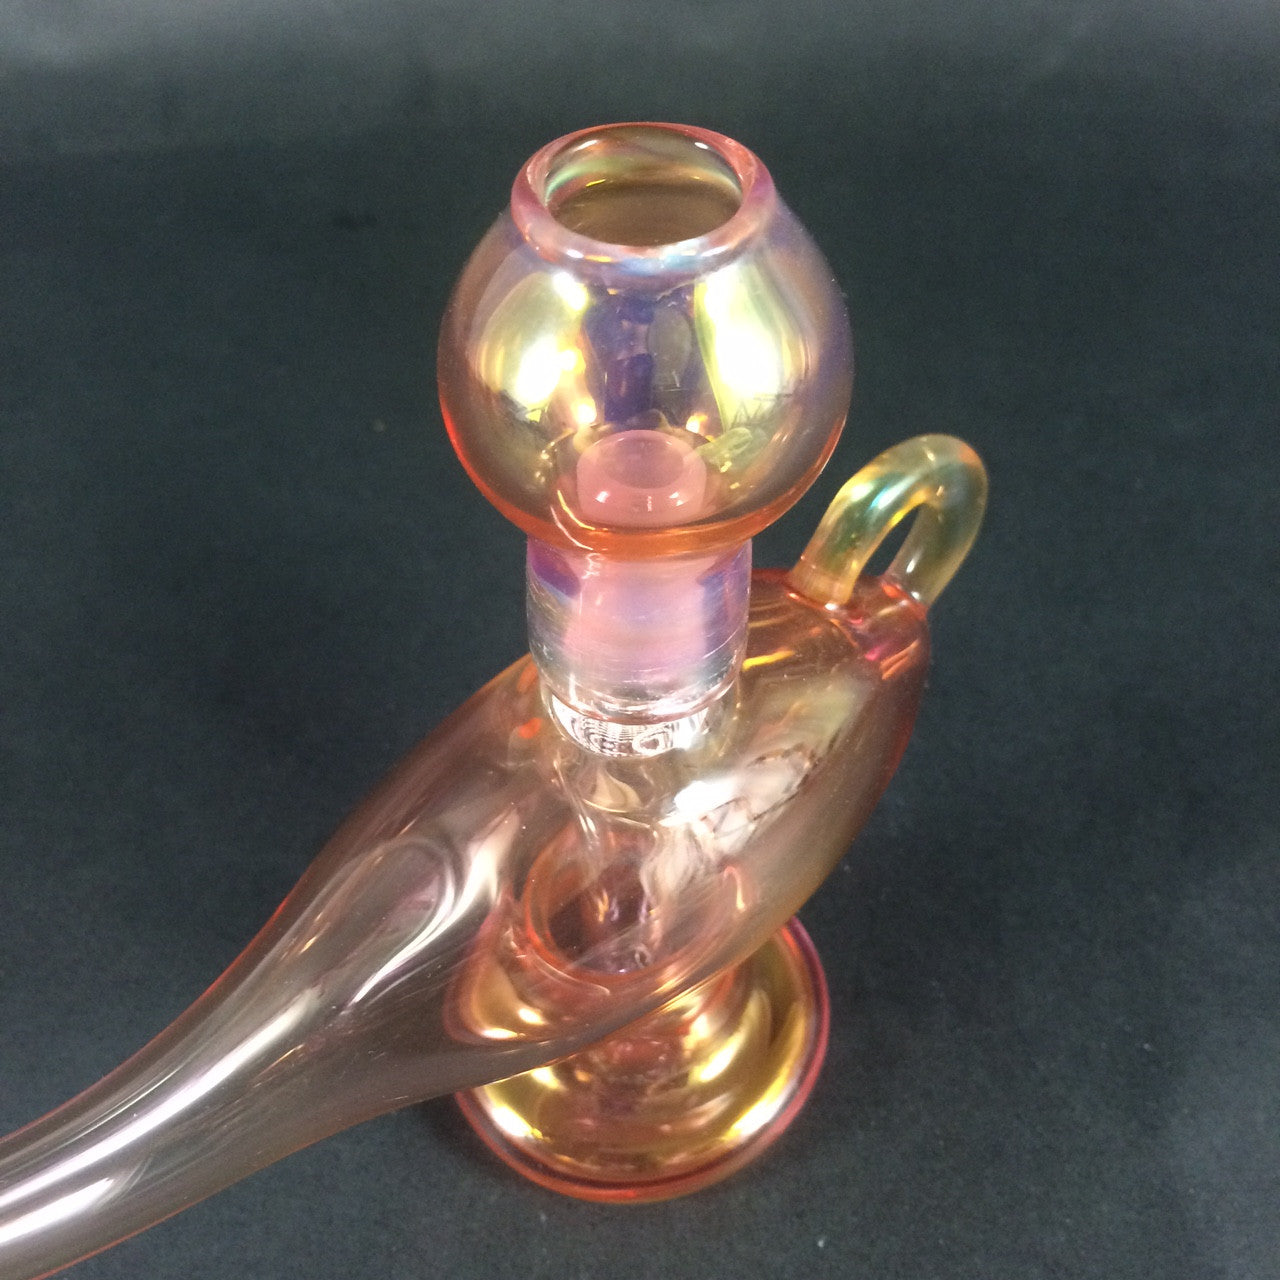 14mm Fumed Genie Lamp Dab Rig by, Dcon